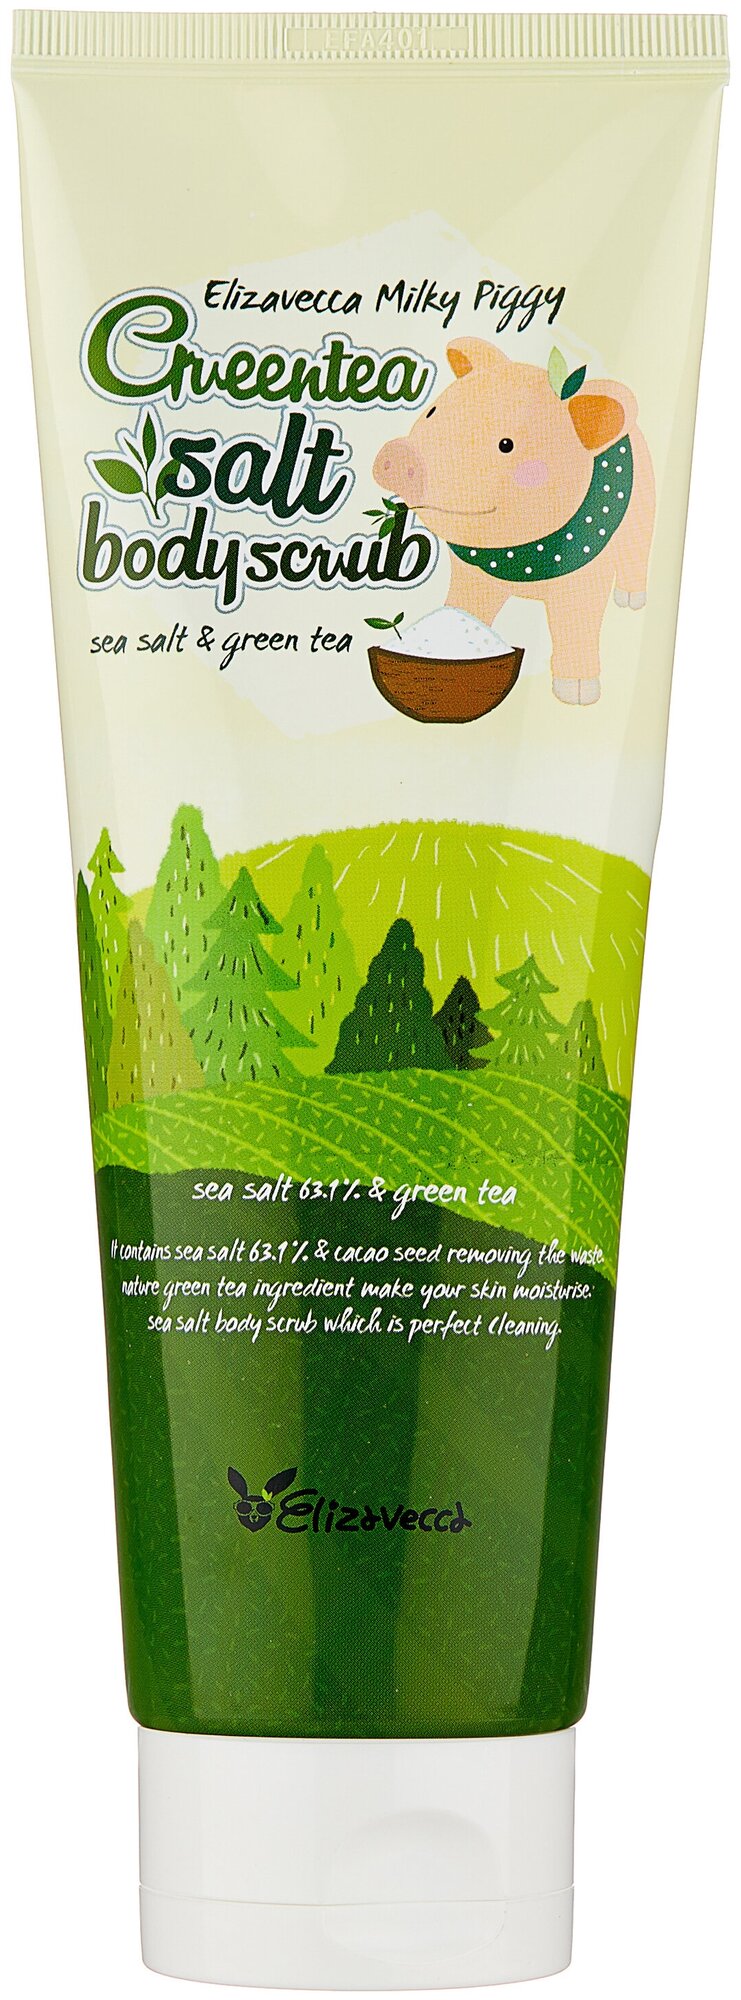 Скраб для тела с морской солью и экстрактом зелёного Elizavecca Milky Piggy Greentea Salt Body Scrub 300g